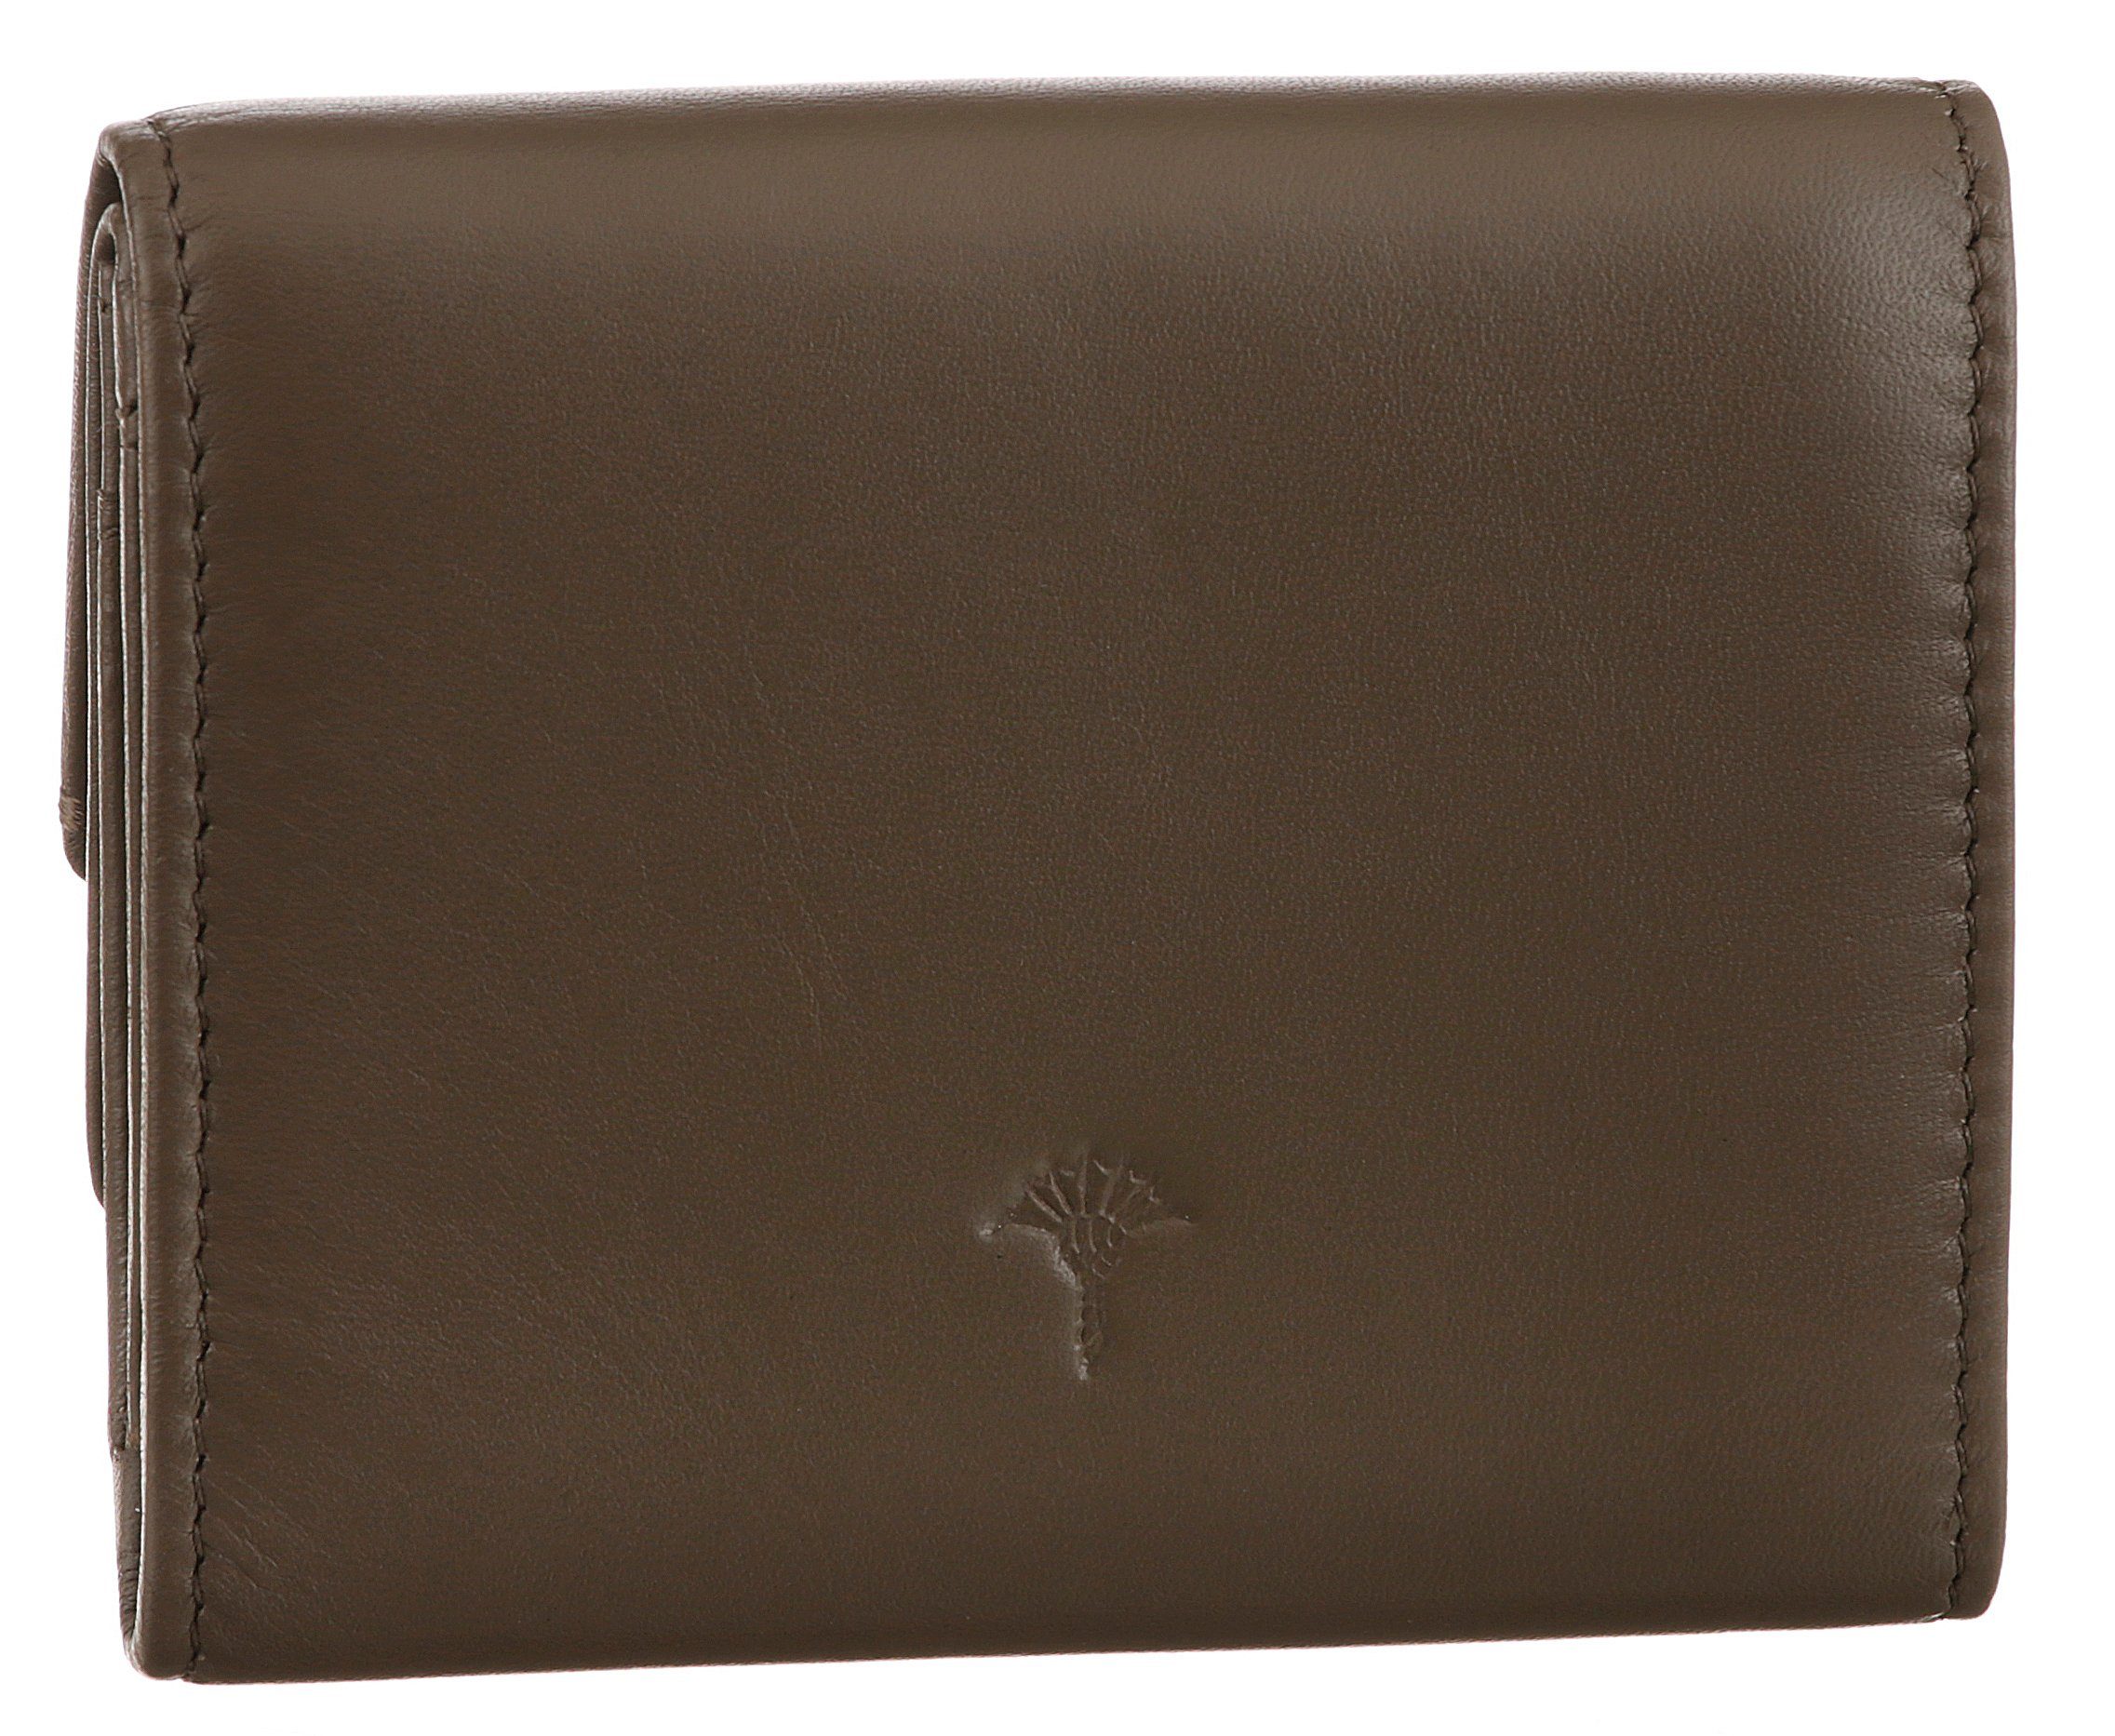 sofisticato schlichtem Design Geldbörse purse sh5f, dunkelbraun Joop! in 1.0 lina